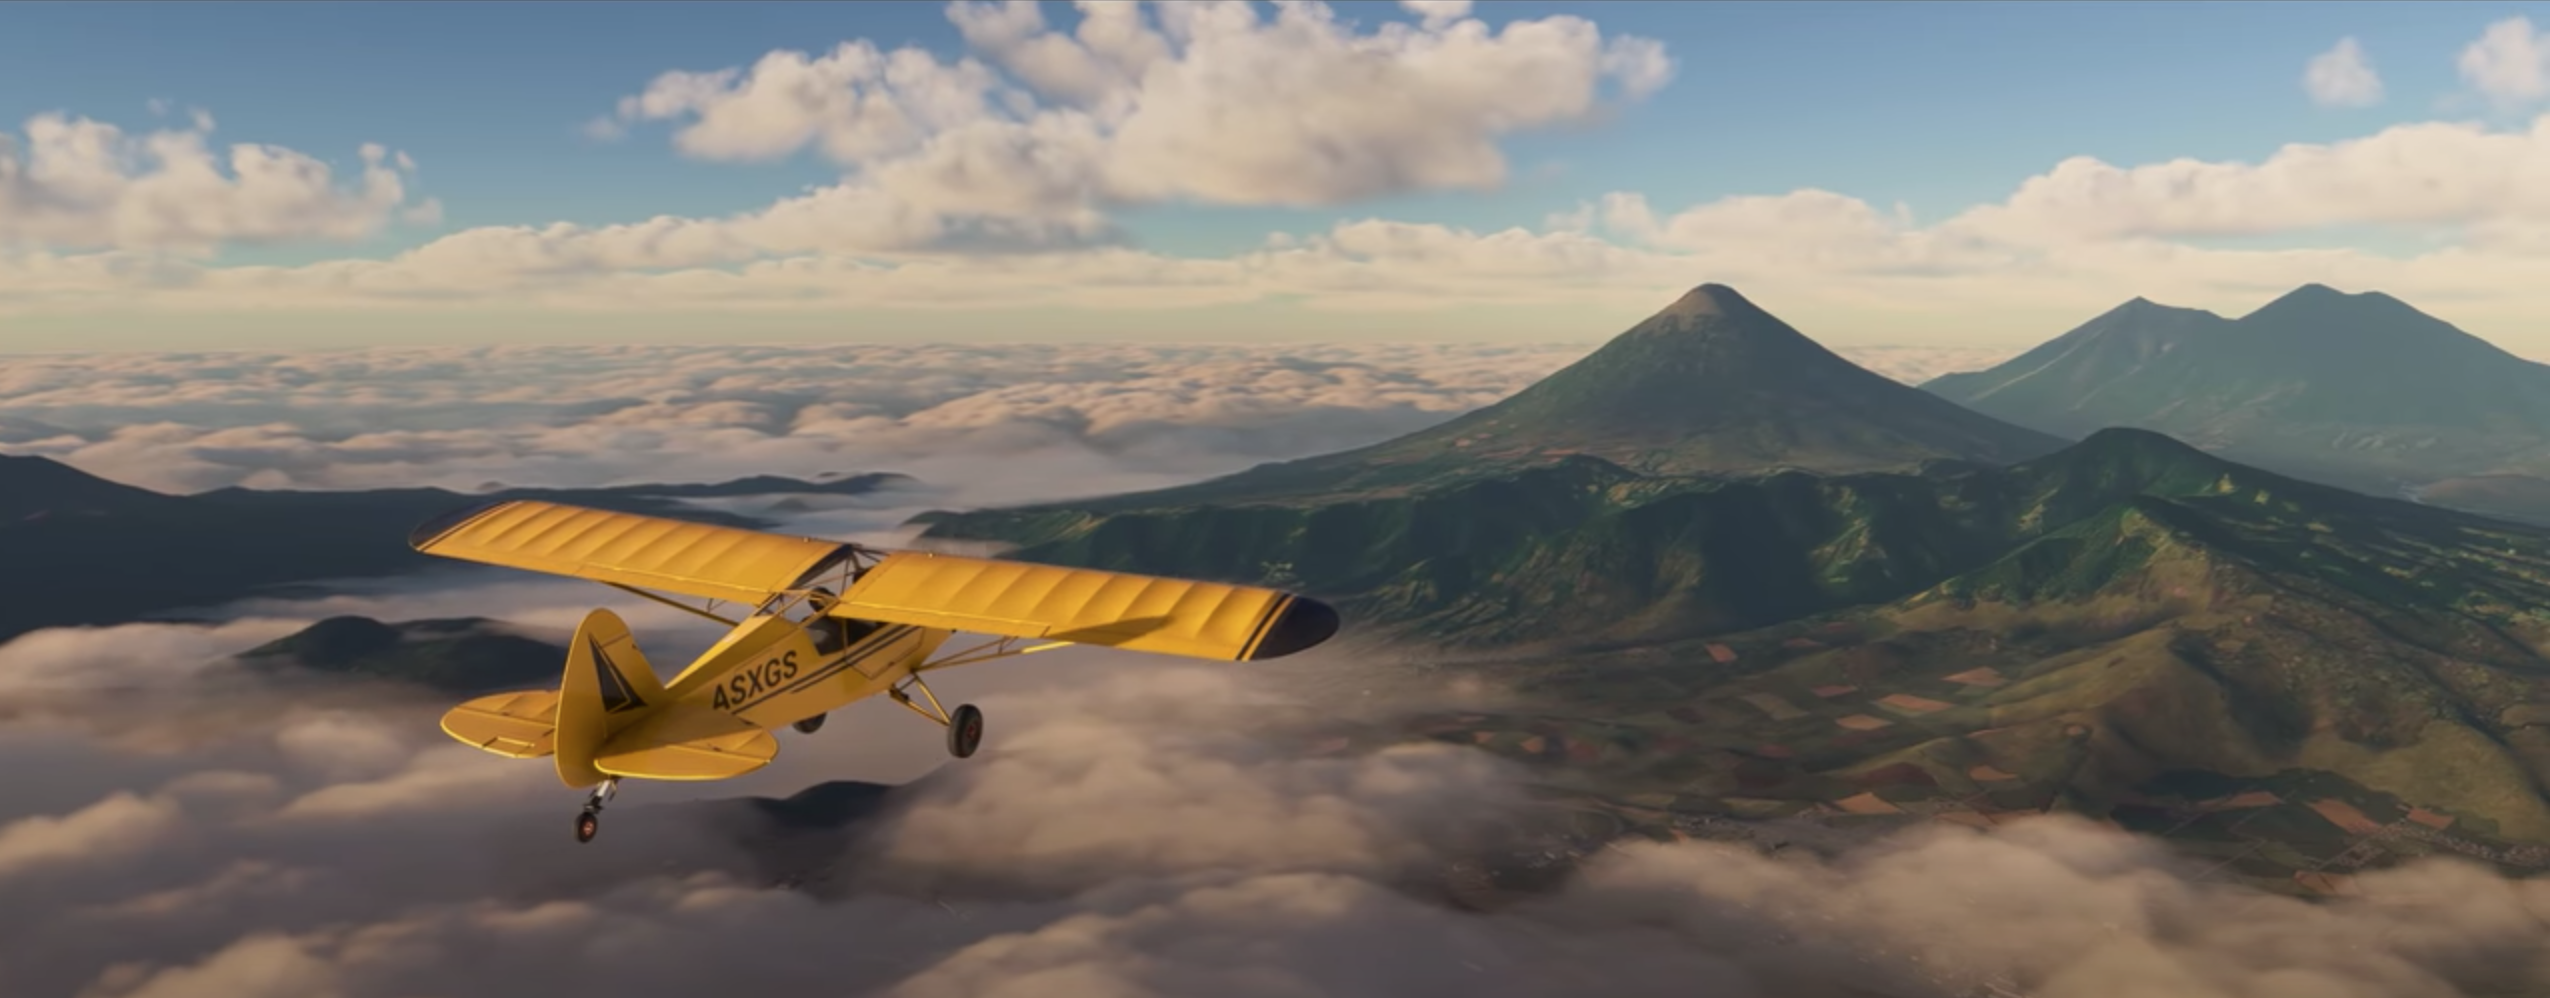 Microsoft anuncia Flight Simulator 2020 para consolas de próxima generación con nuevo tráiler